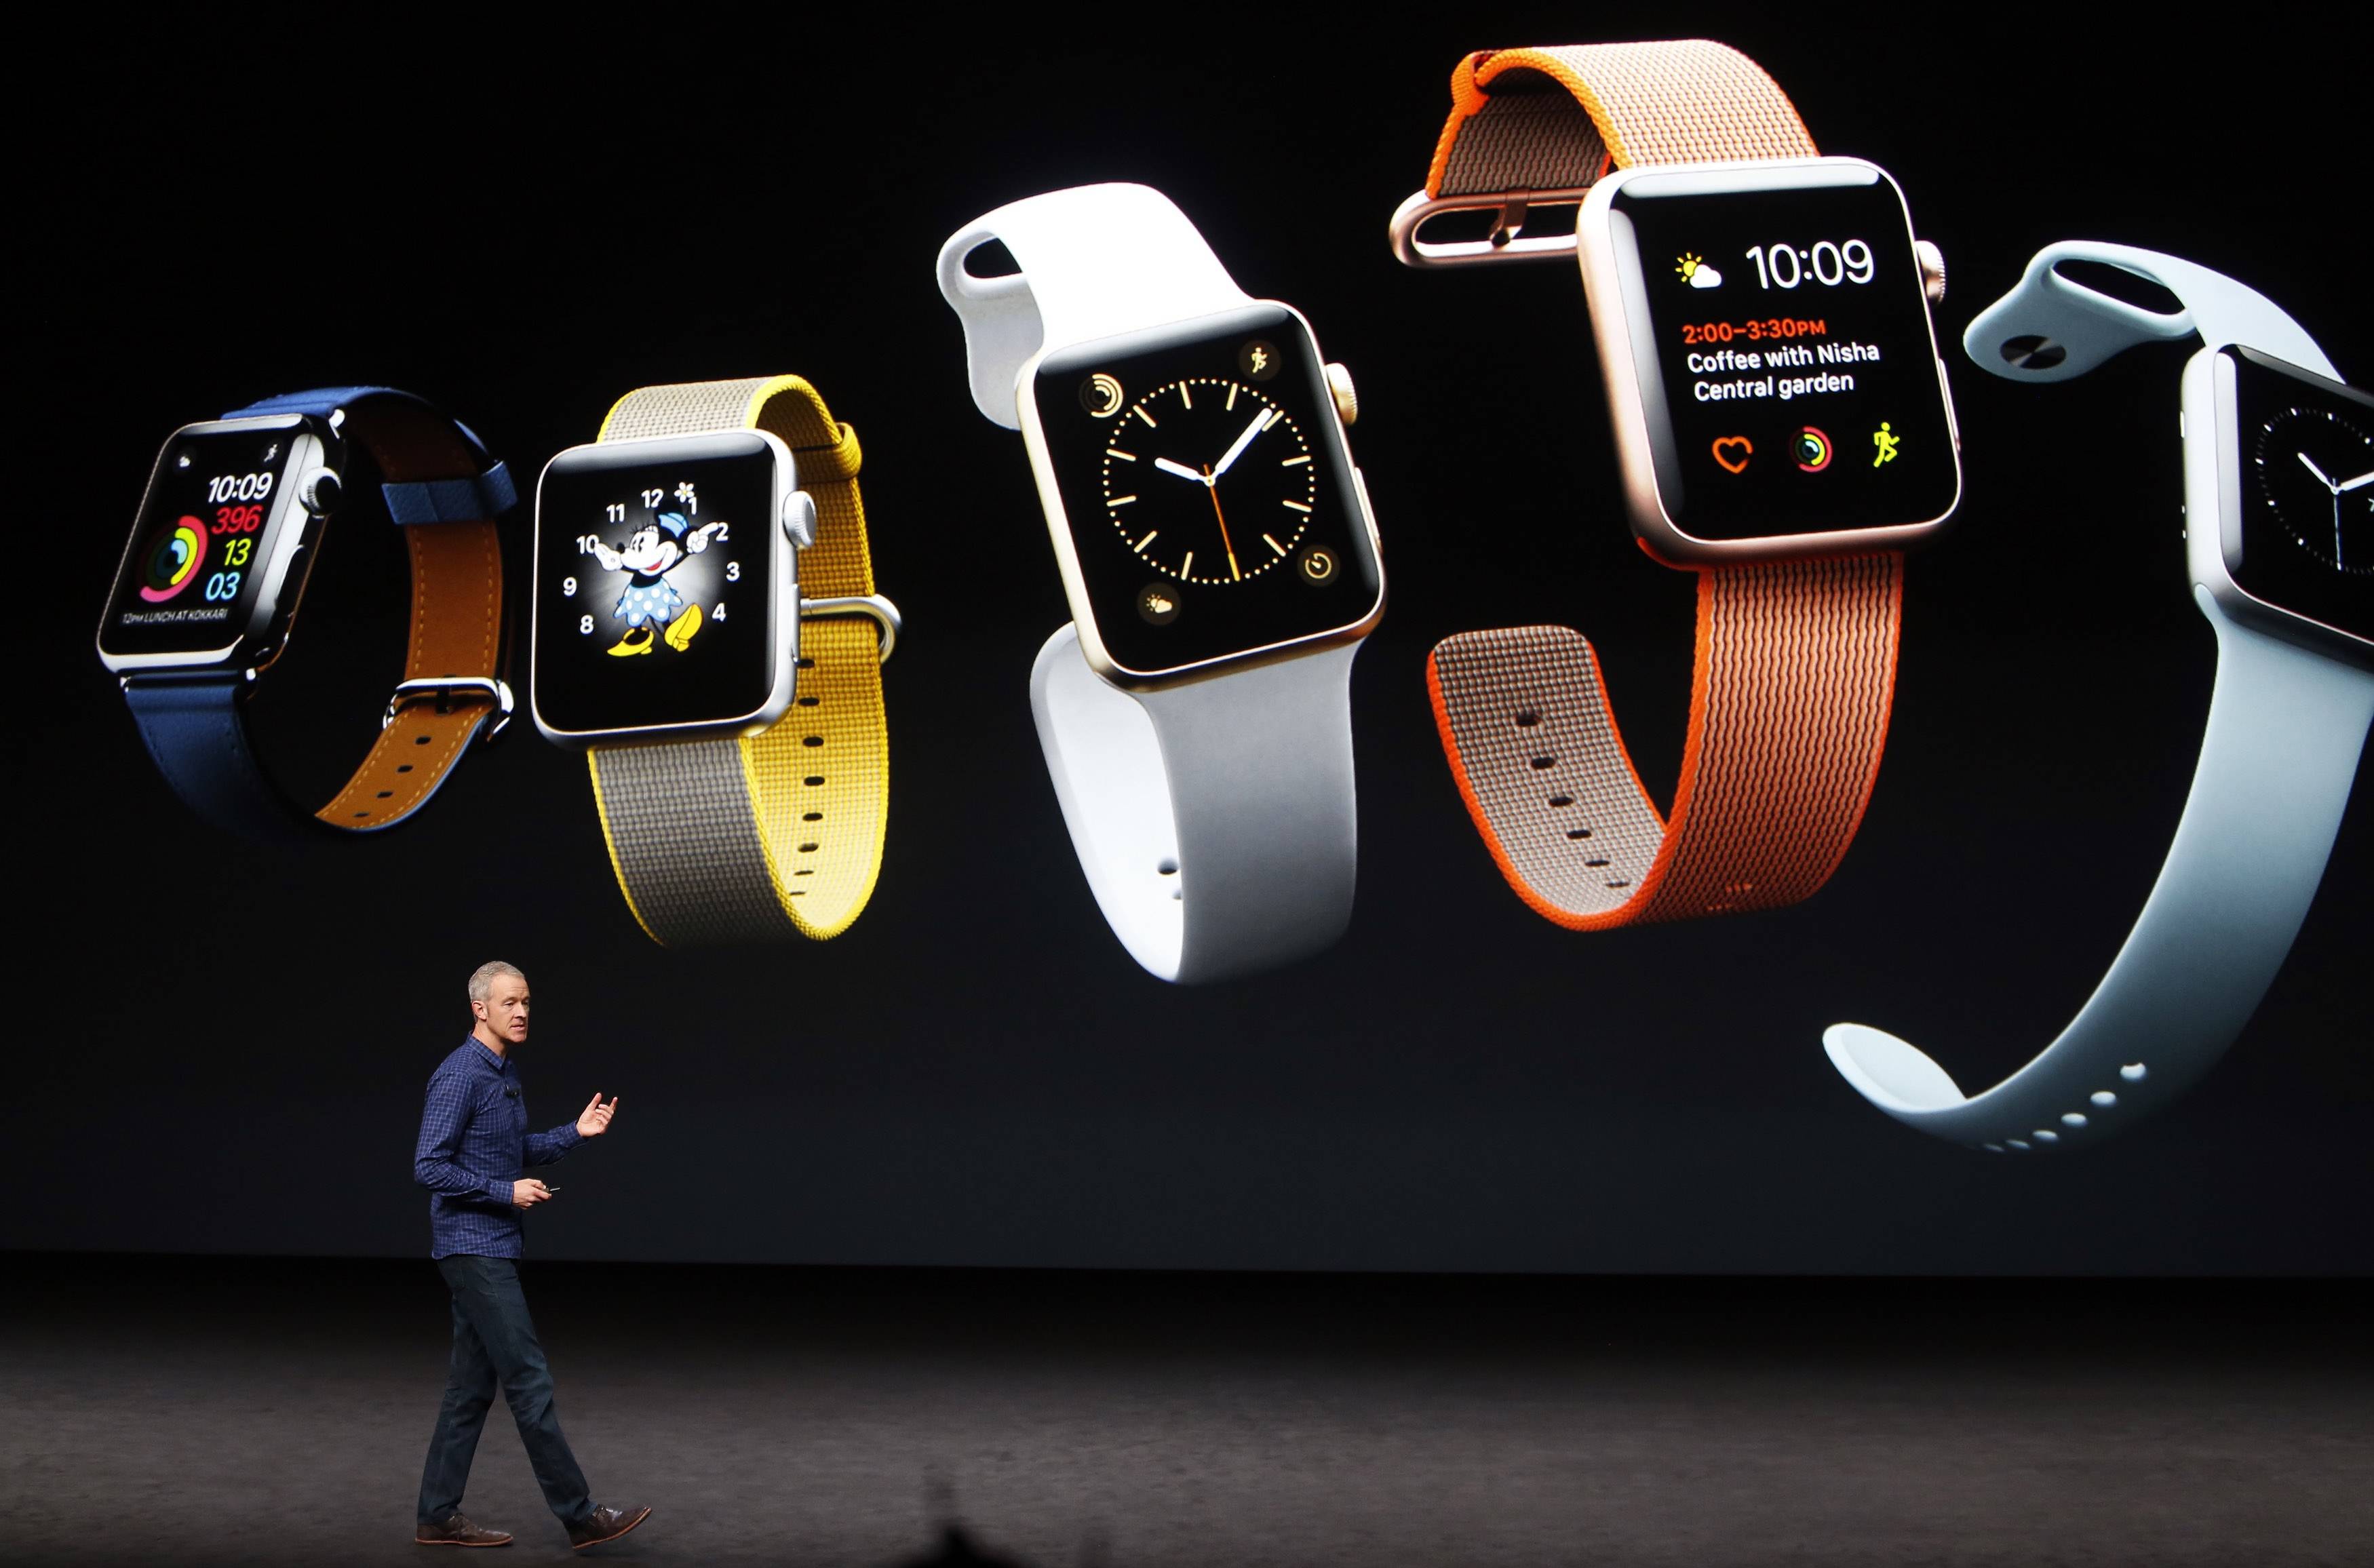 ase001 - Dopo iPhone, iPad e Mac, anche il prossimo Apple Watch ha un modello Pro